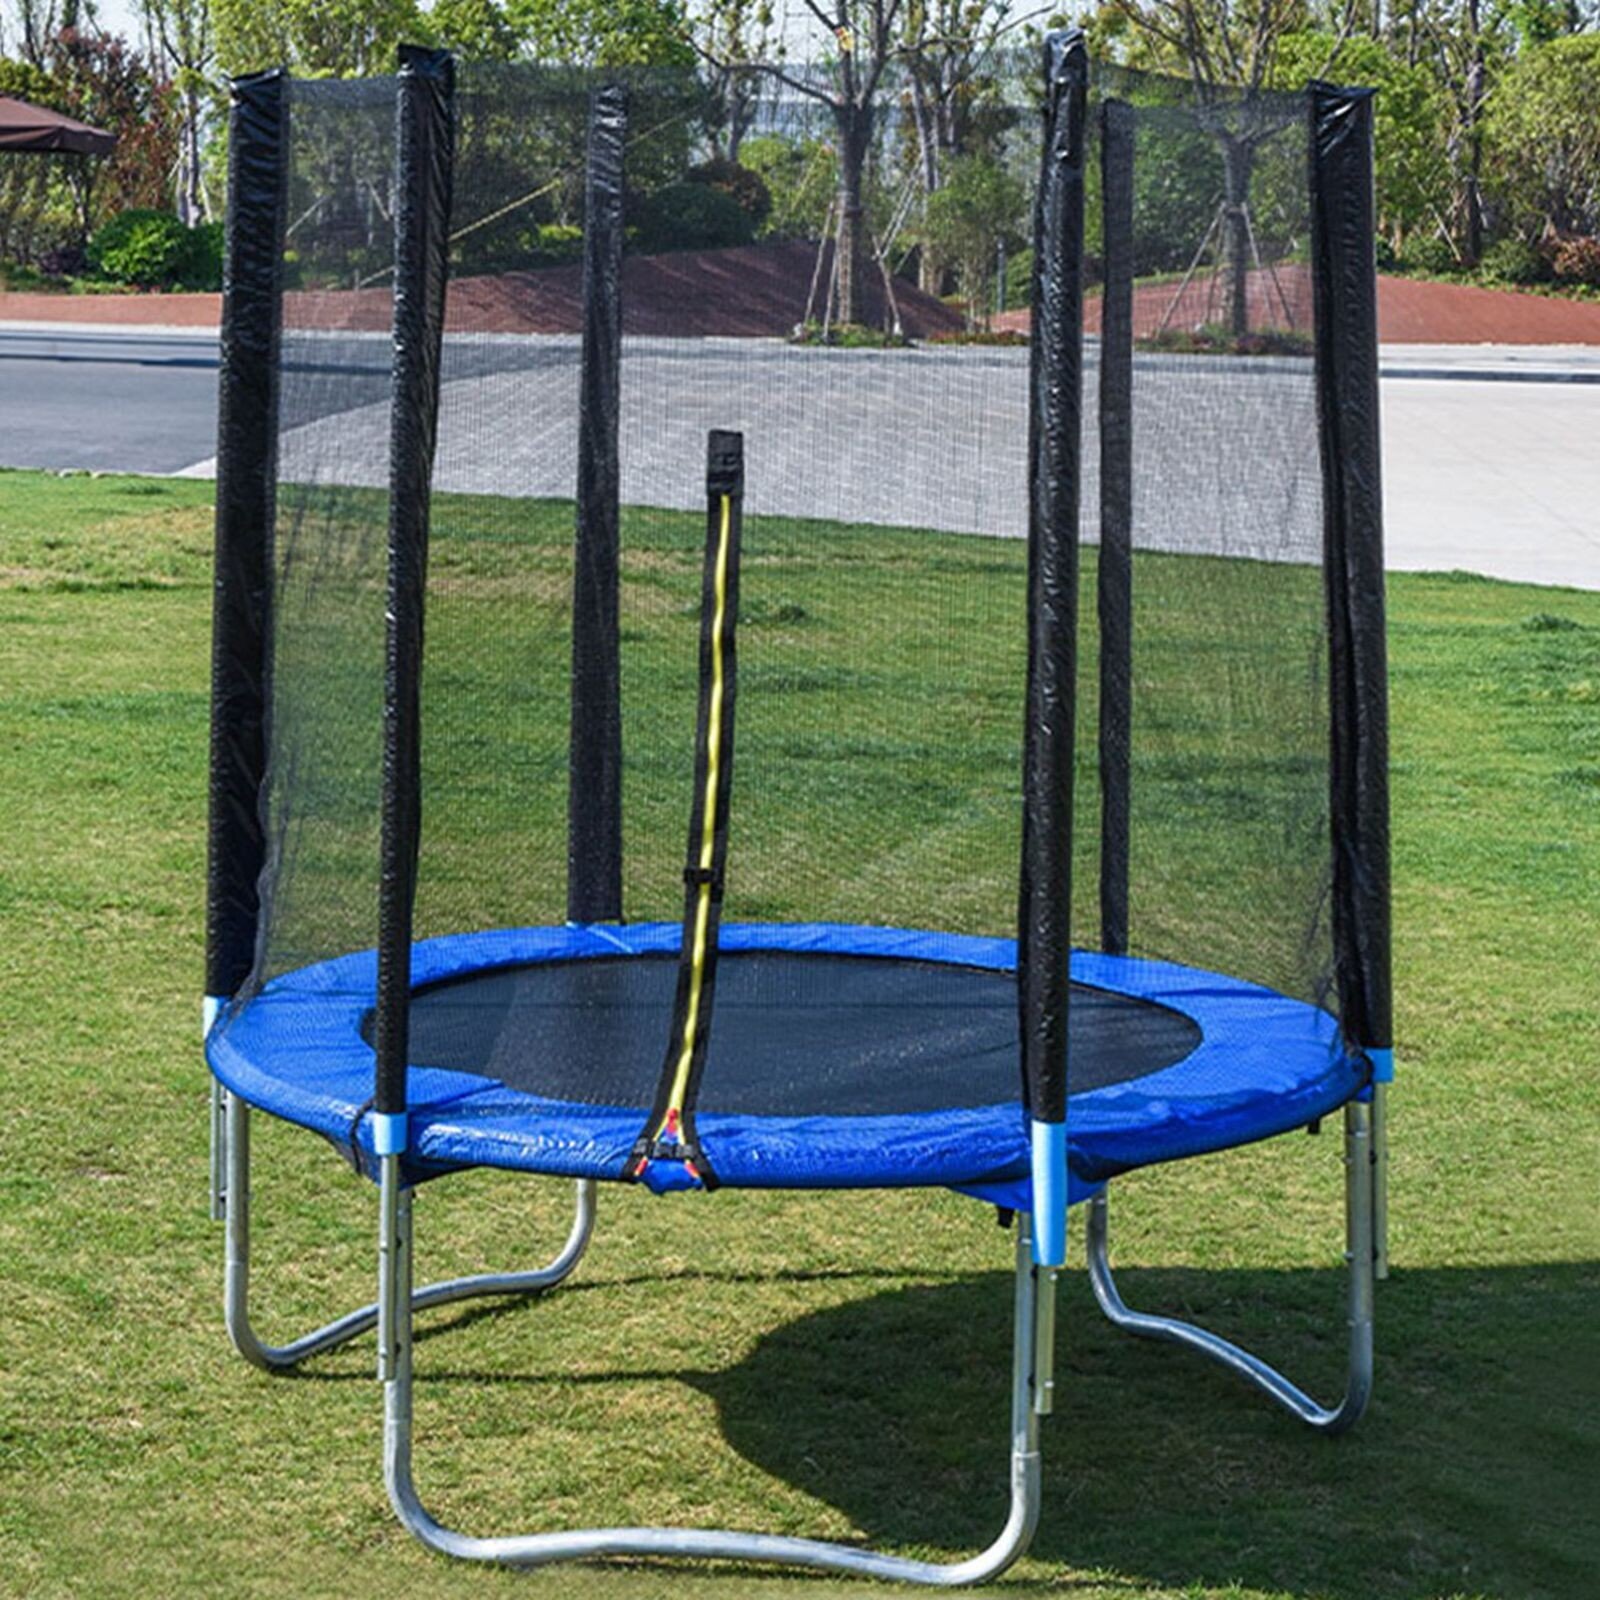 6FT Kid Trampoline With Safety Net Enclosure Children Outdoor Garden Fun Toy 